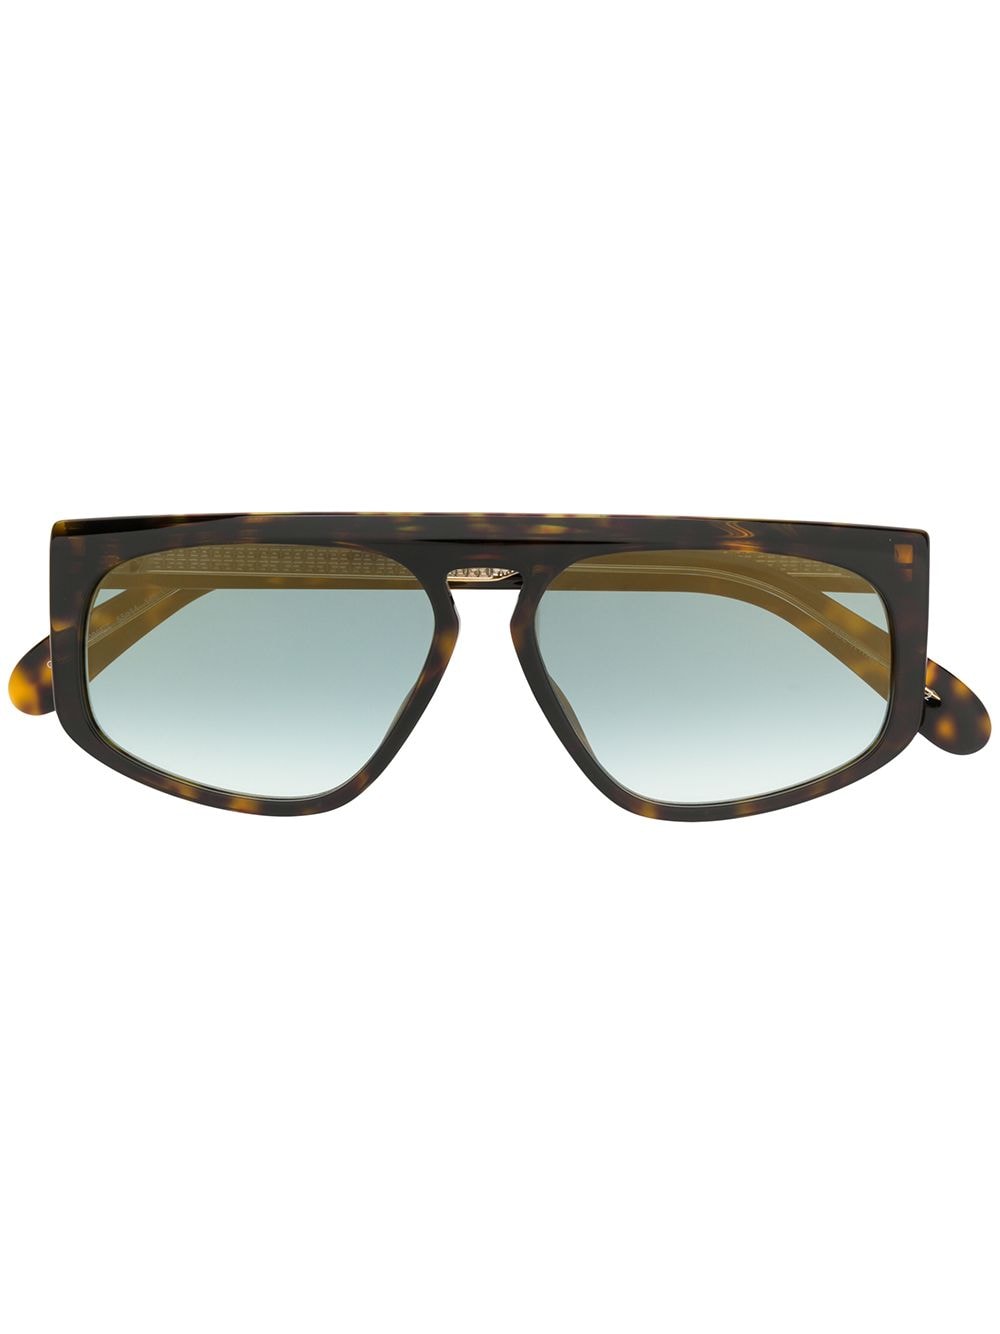 фото Givenchy Eyewear солнцезащитные очки черепаховой расцветки